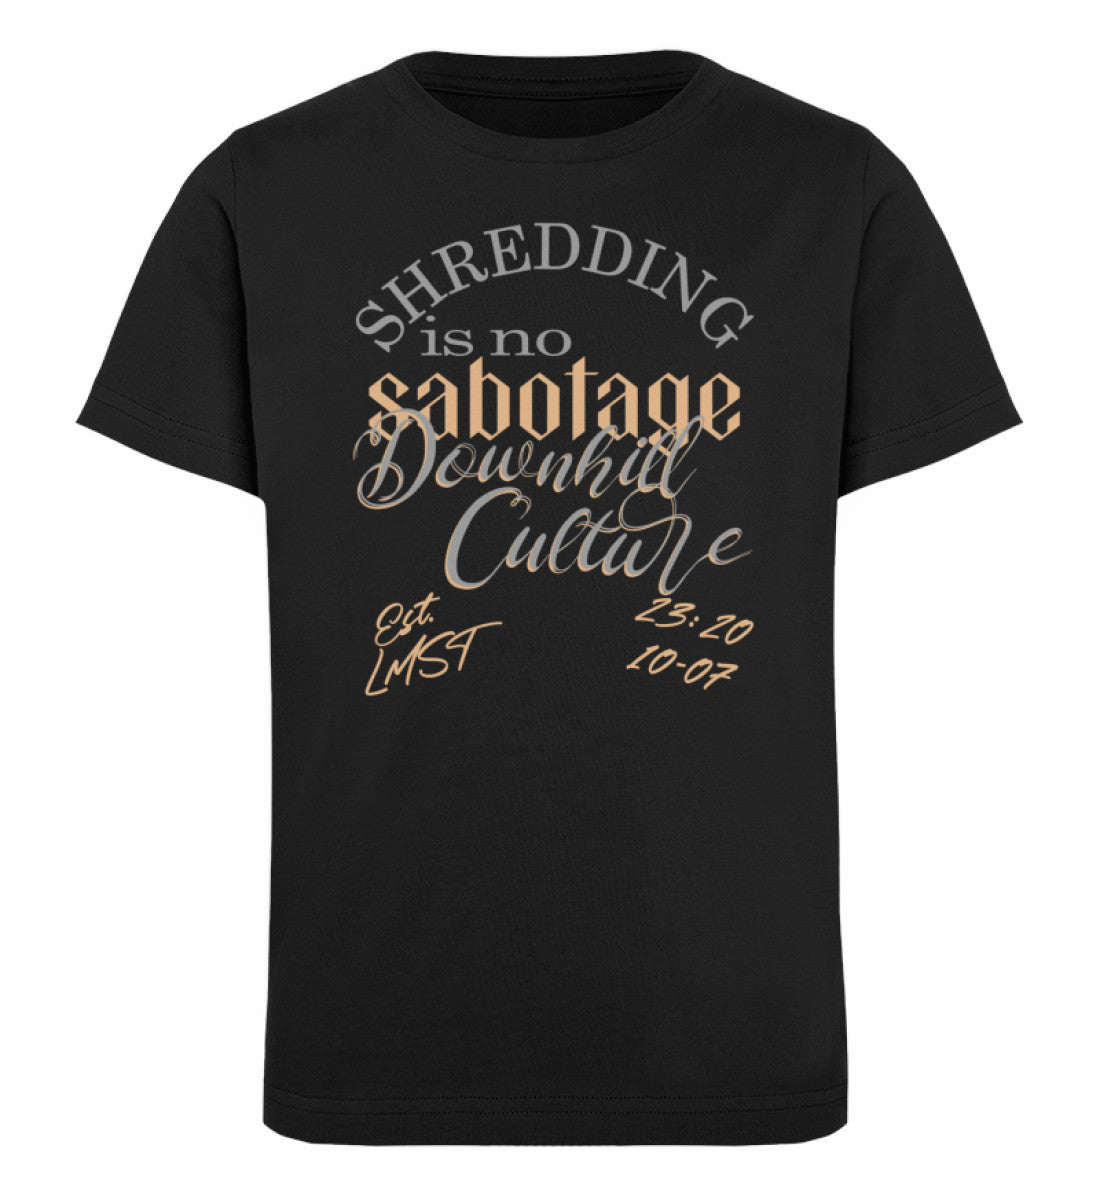 Schwarzes Kinder T-Shirt für Mädchen und Jungen bedruckt mit dem Design der Roger Rockawoo Kollektion Shredding is no sabotage